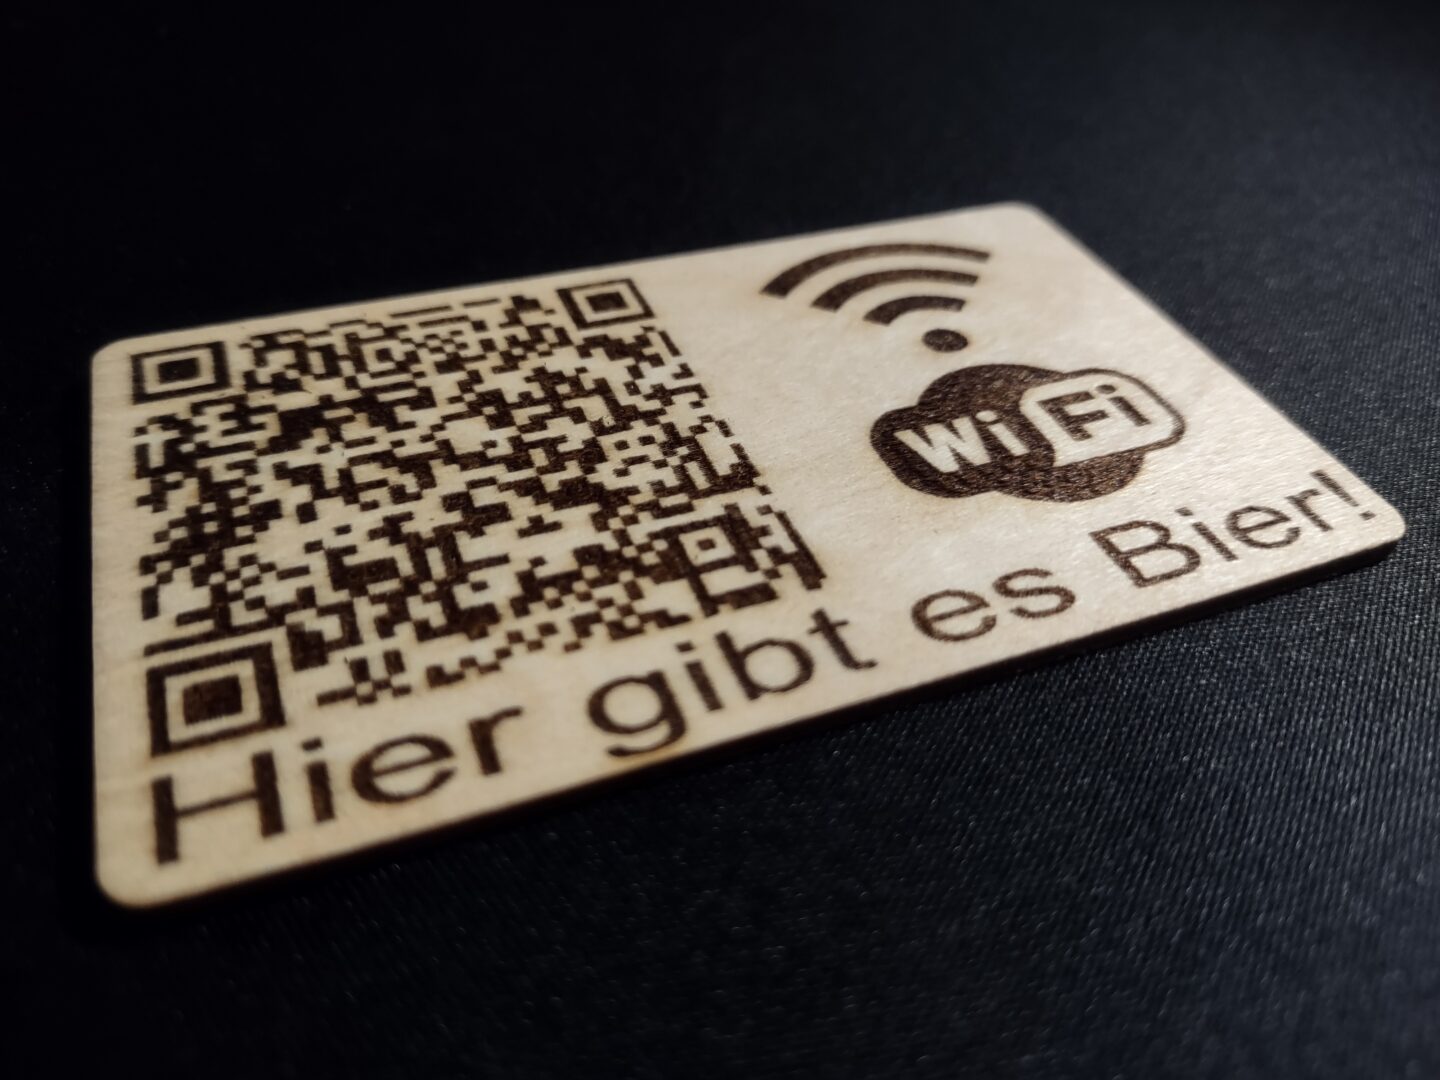 Eine Visitenkarte aus Holz, auf der ein QR-Code und das WiFi-Logo abgebildet sind. Zusätzlich steht die SSID "Hier gibt es Bier" am unteren Rand